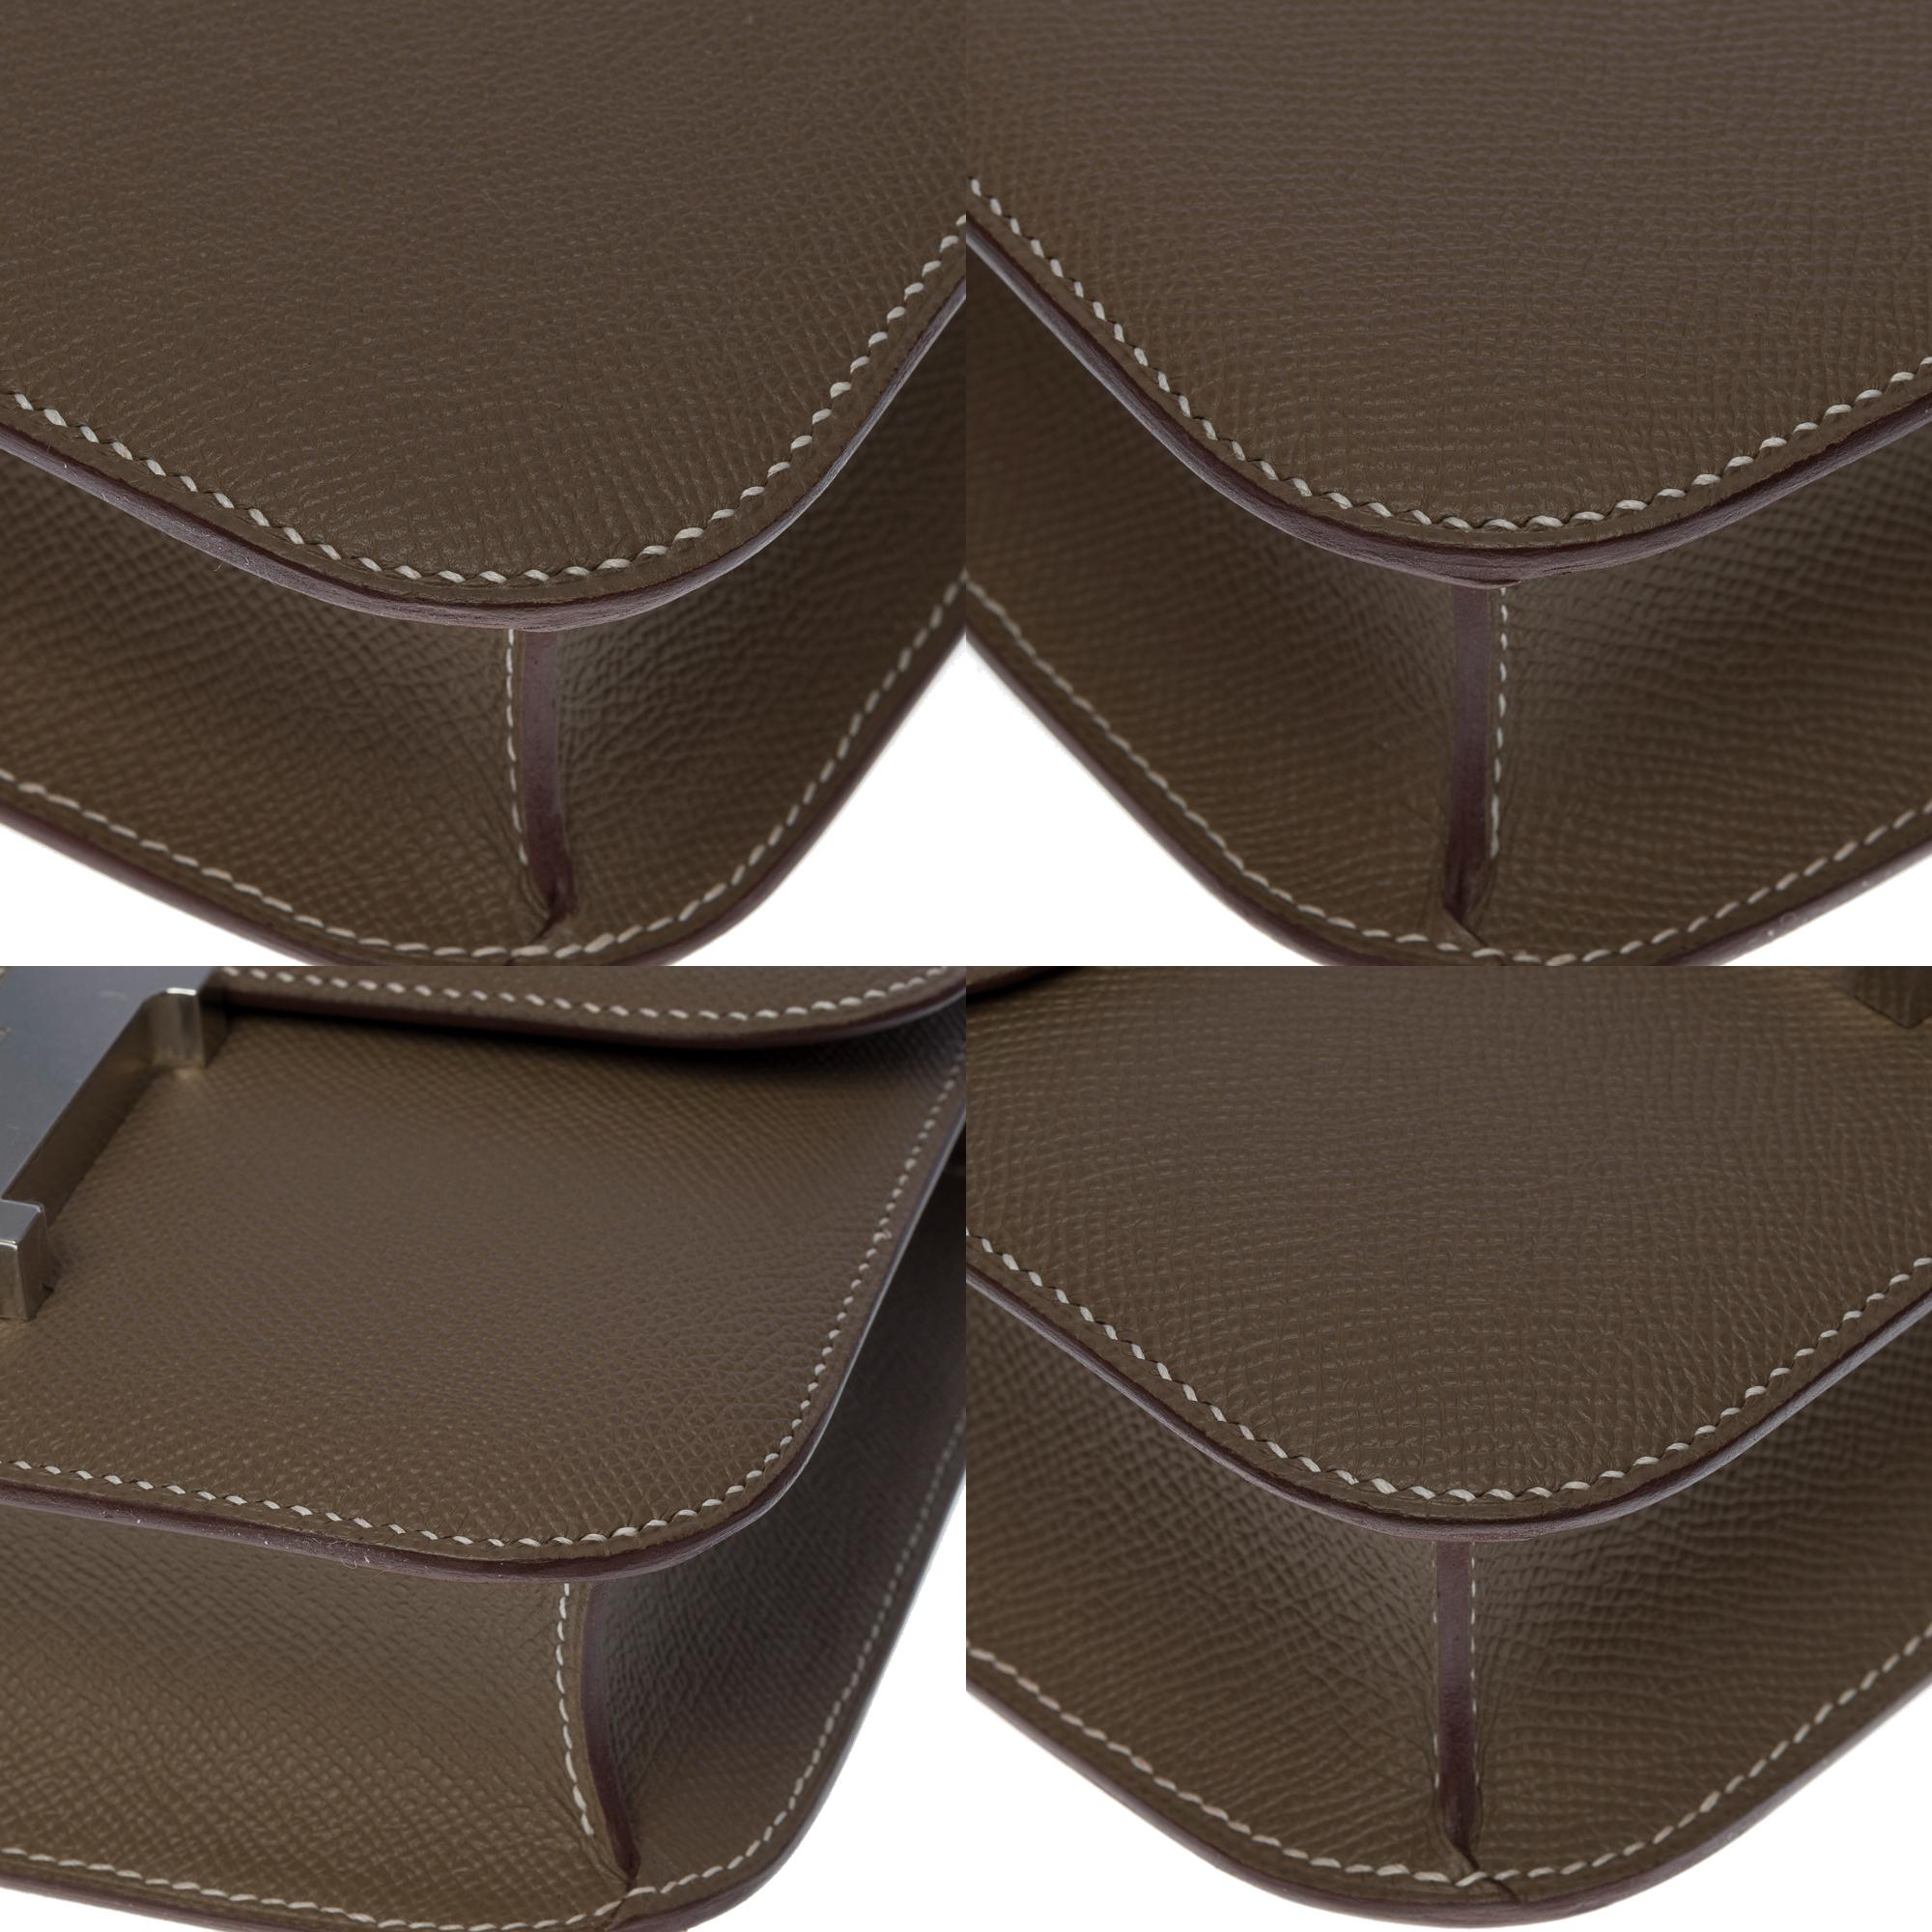 Brand New Hermès Constance 24 shoulder bag in etoupe Epsom leather, SHW 4